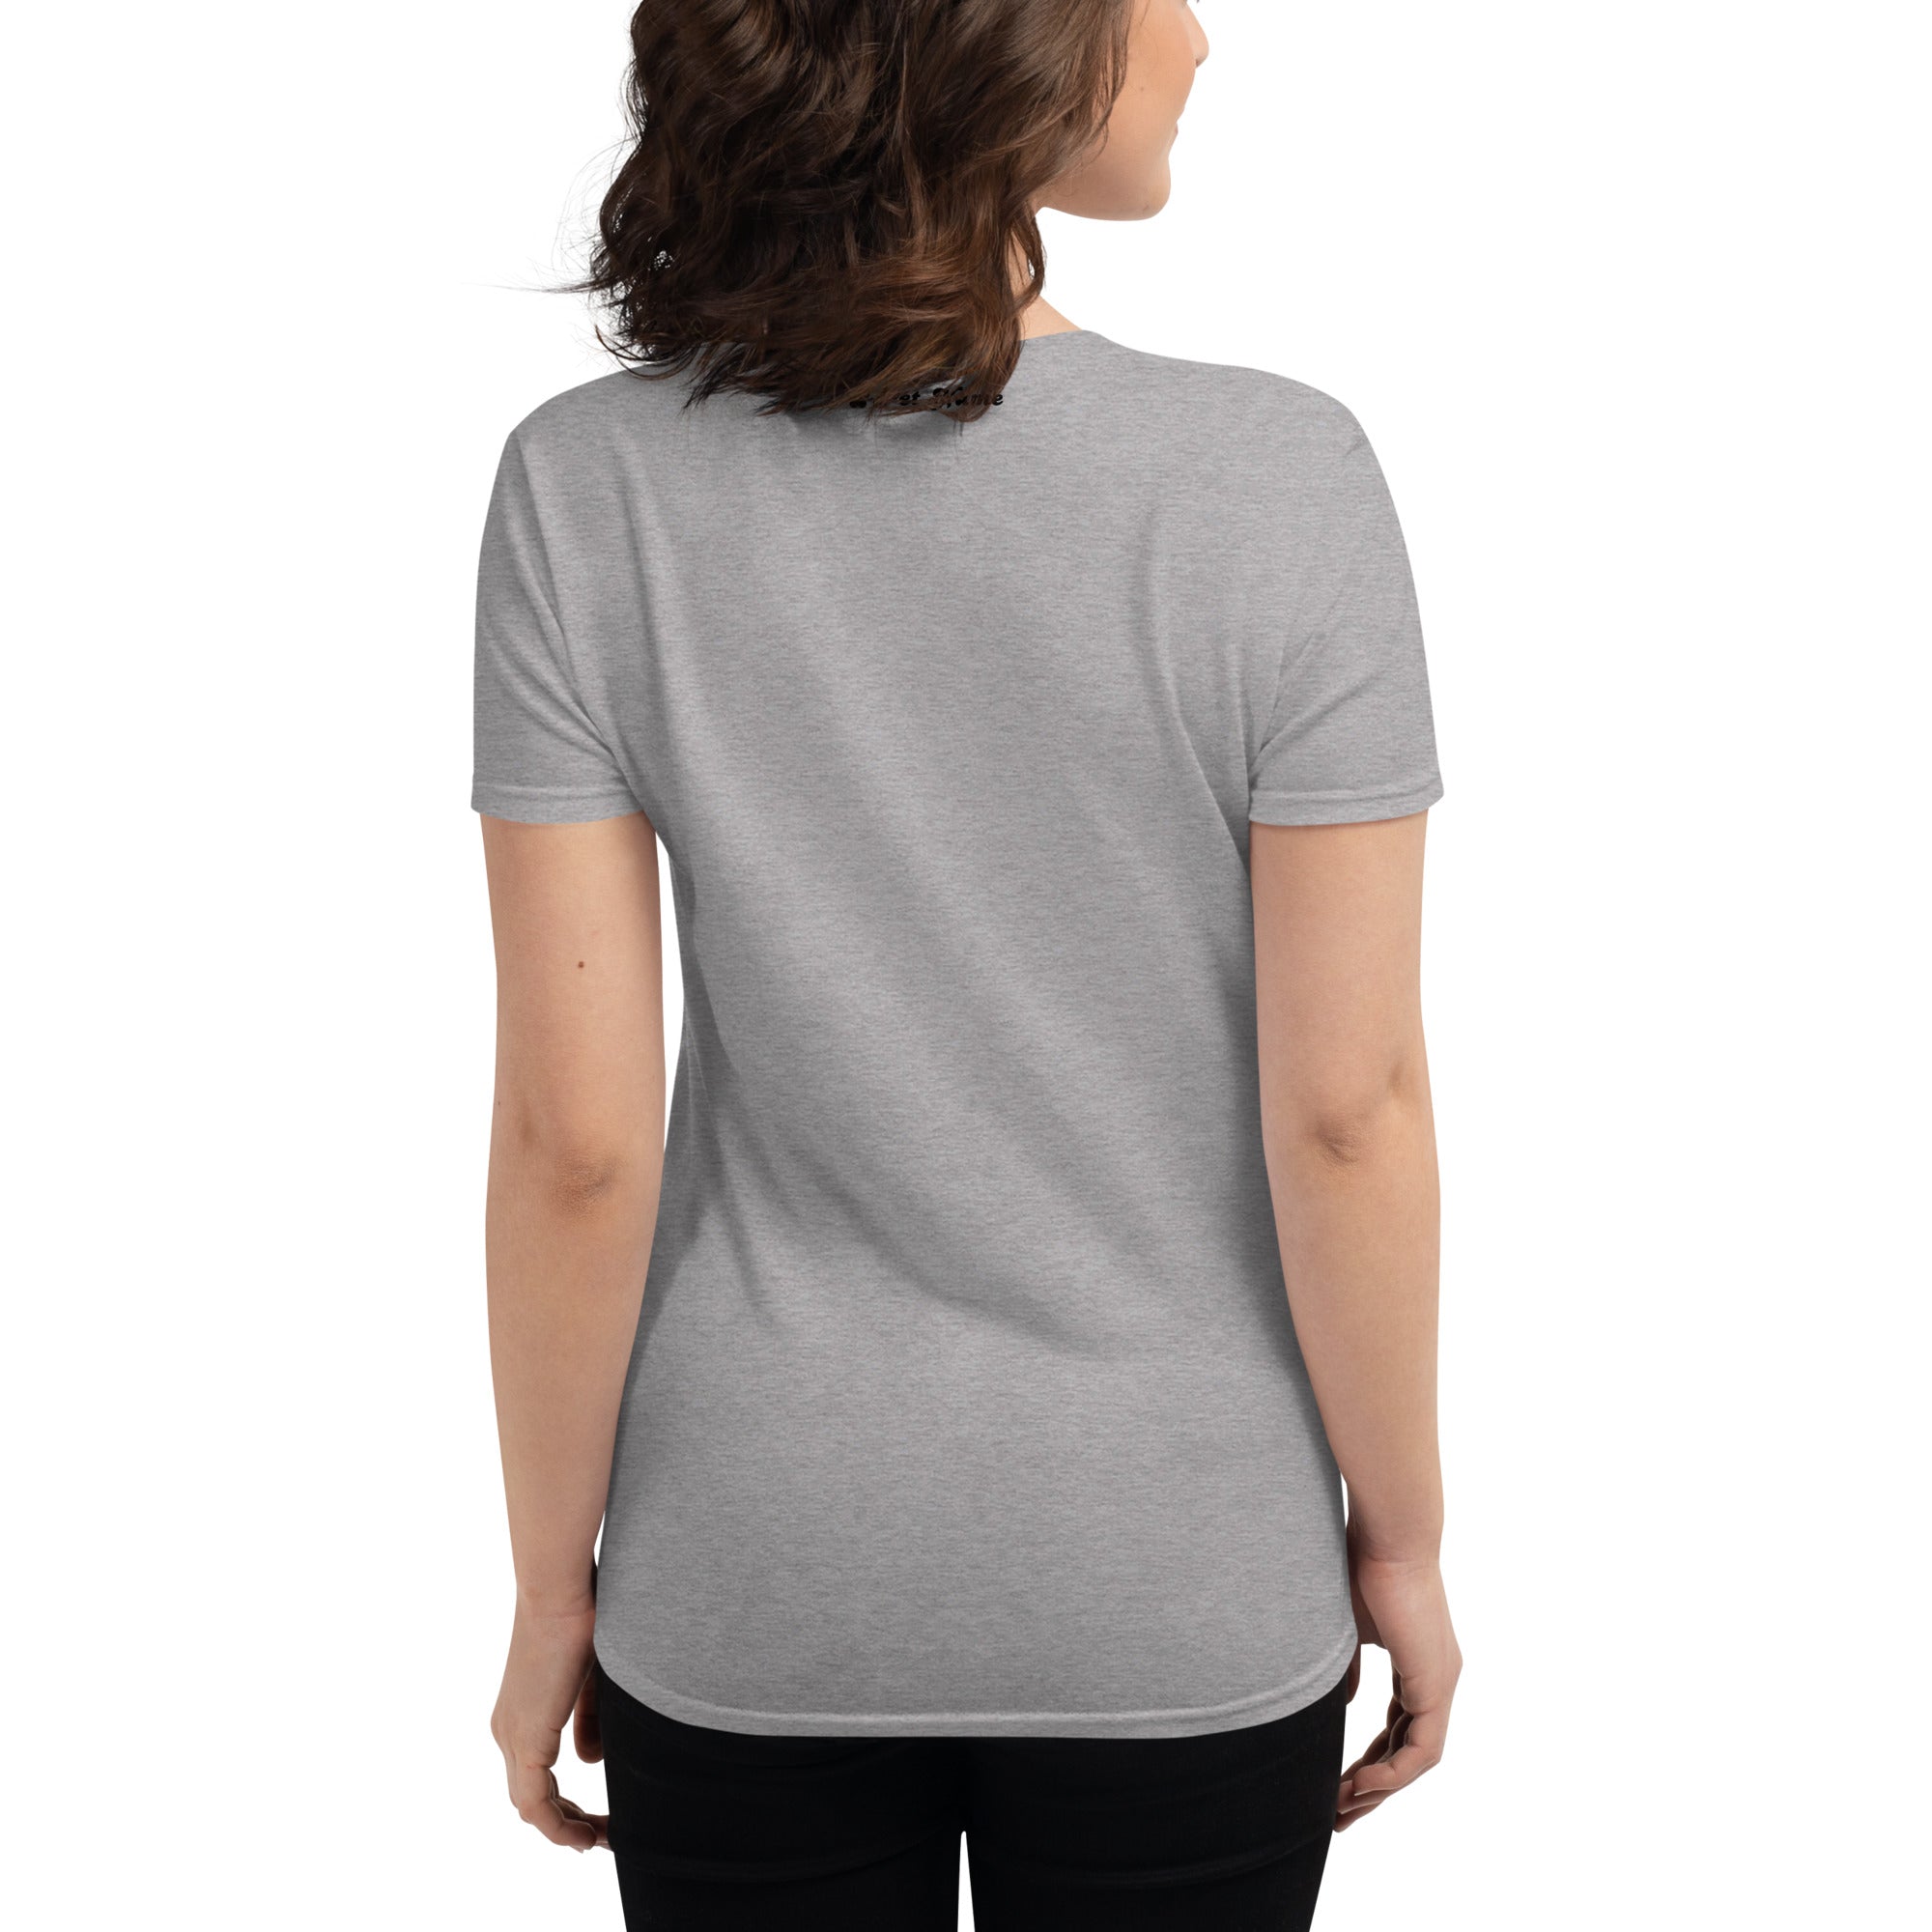 Dachshunds Women's short sleeve t-shirt